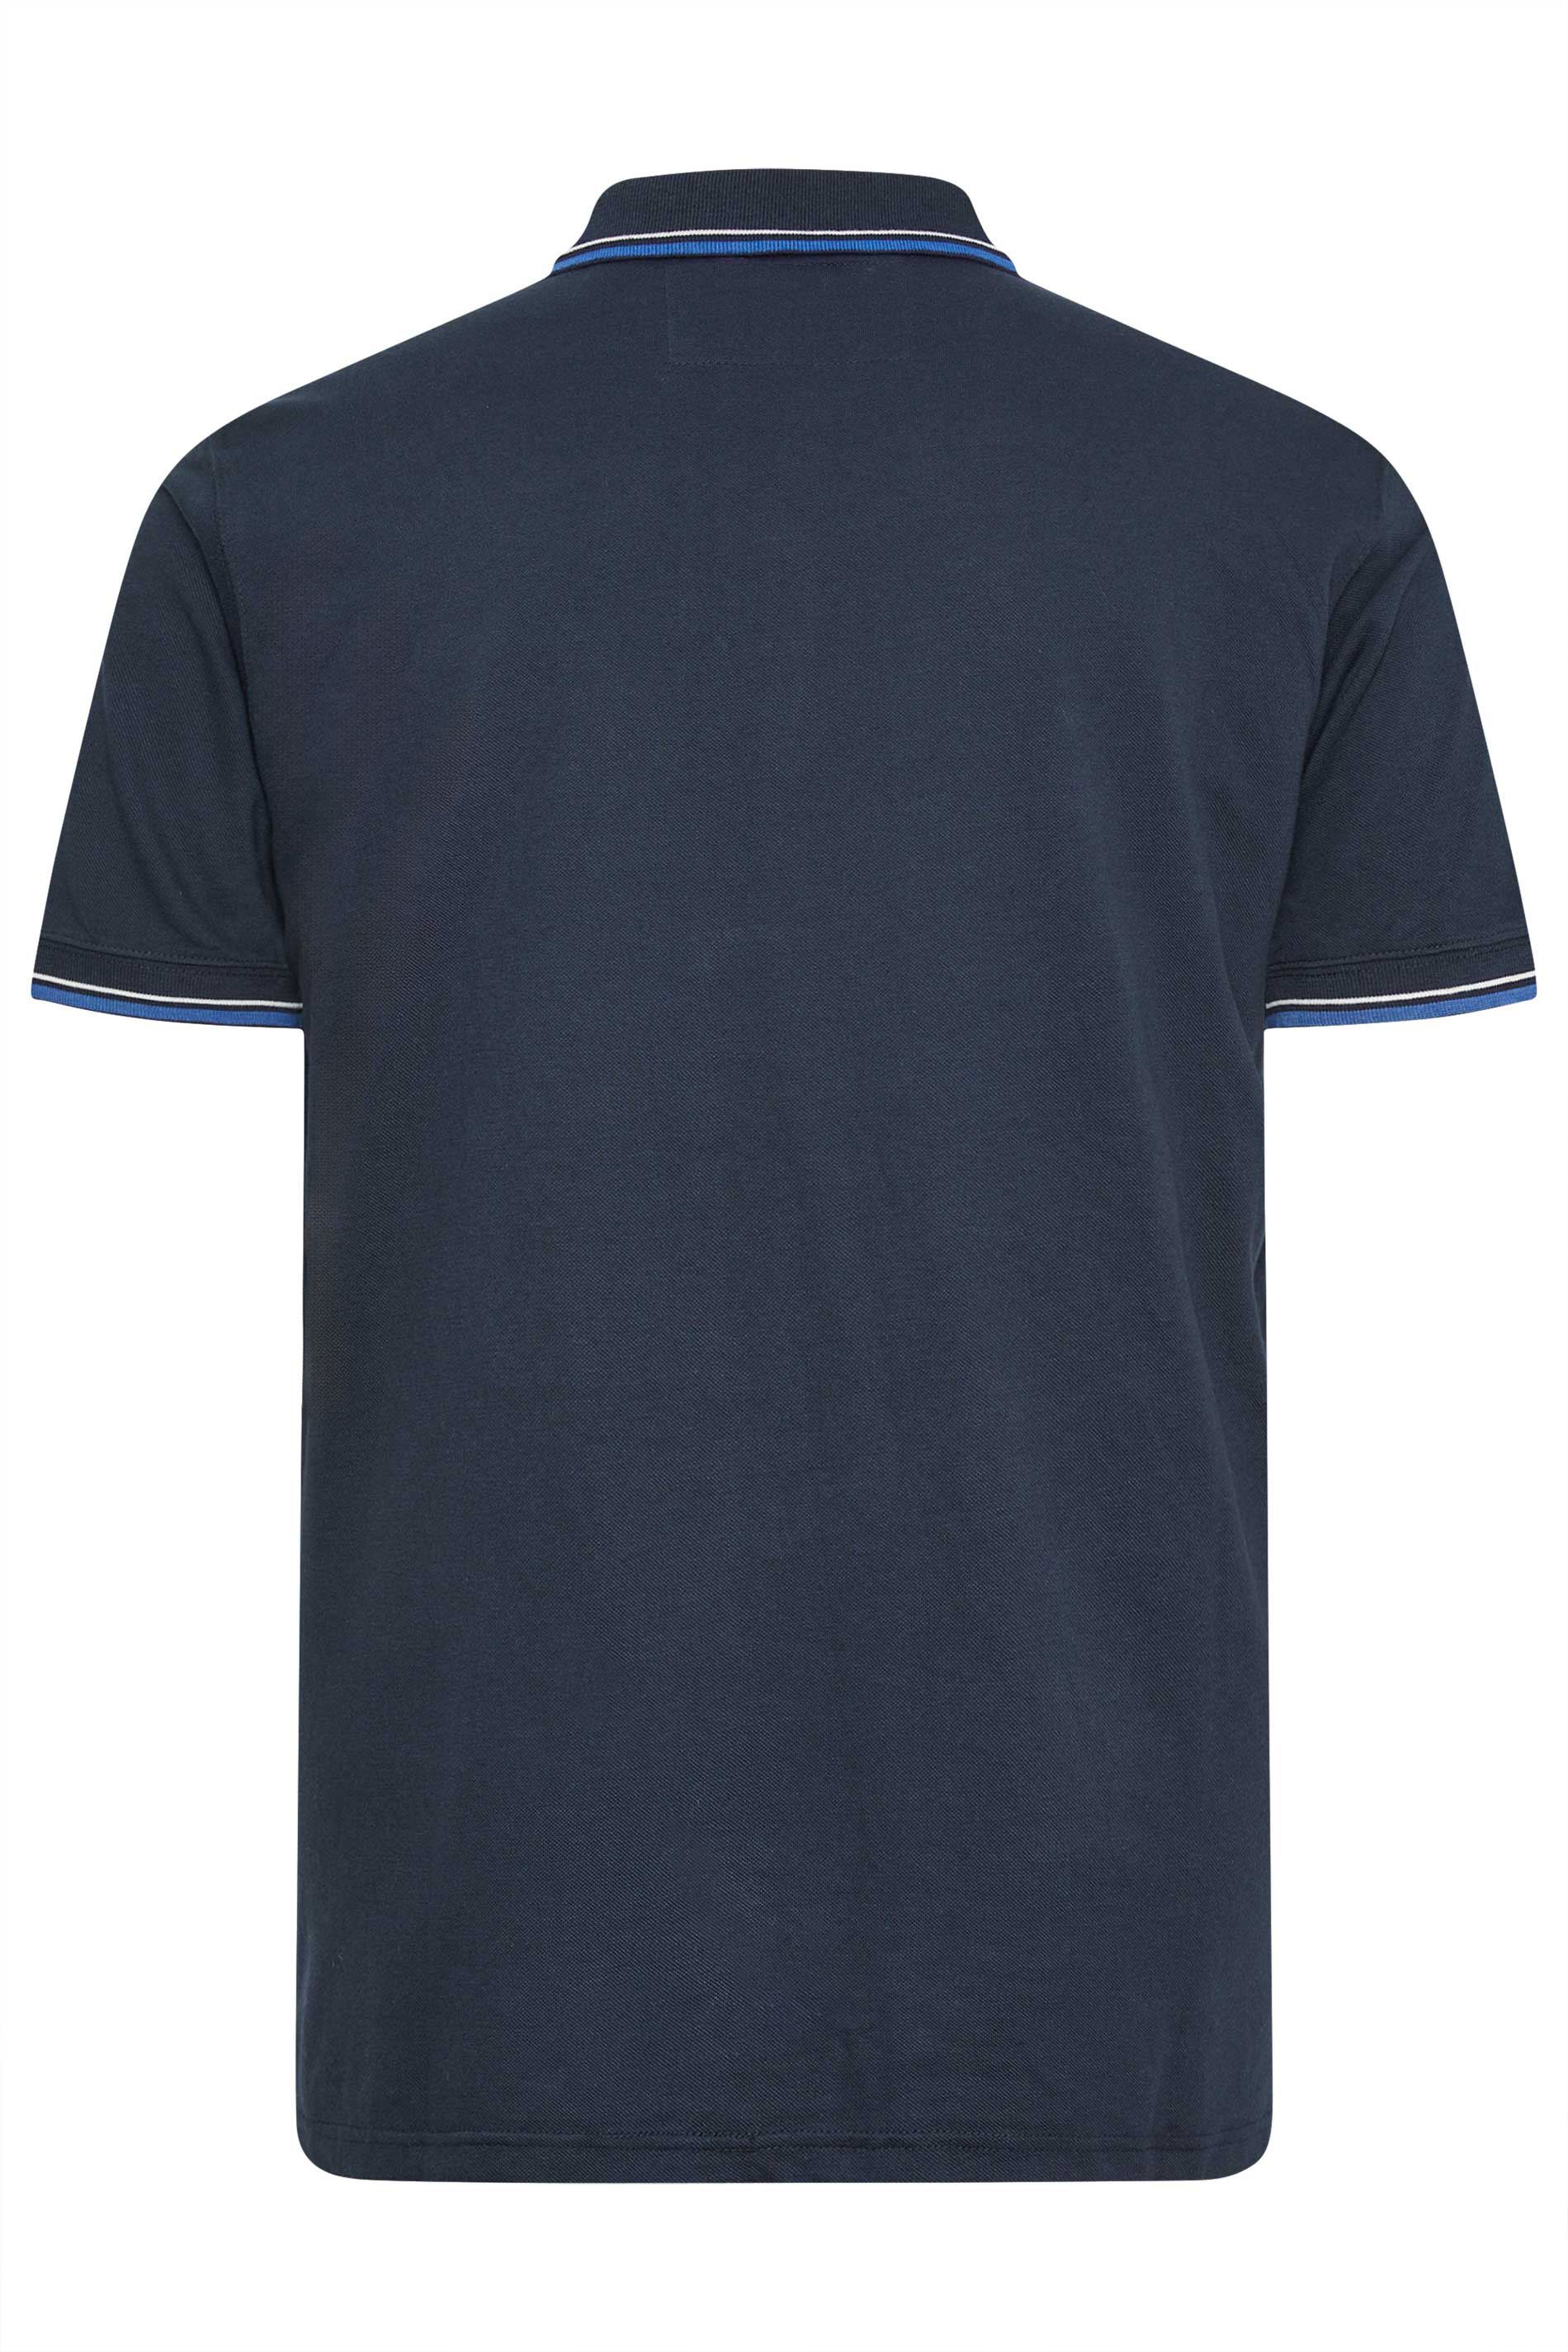 D555 Big & Tall Navy Blue Tipped Polo Shirt | BadRhino 2